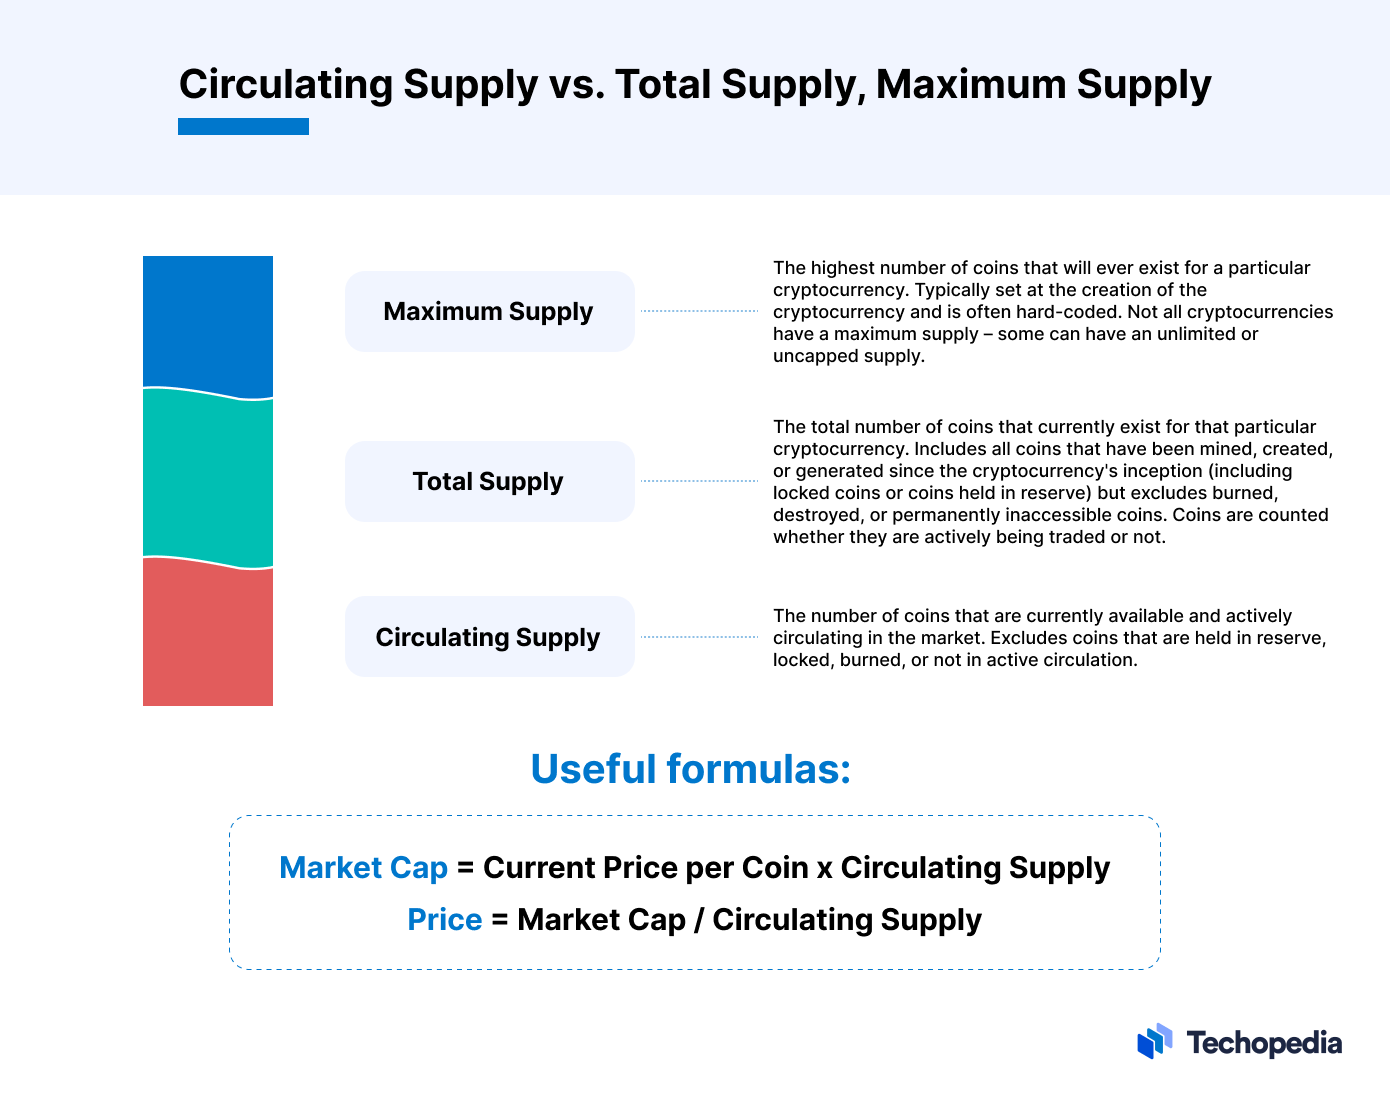 Um infográfico de oferta circulante vs oferta máxima vs oferta total